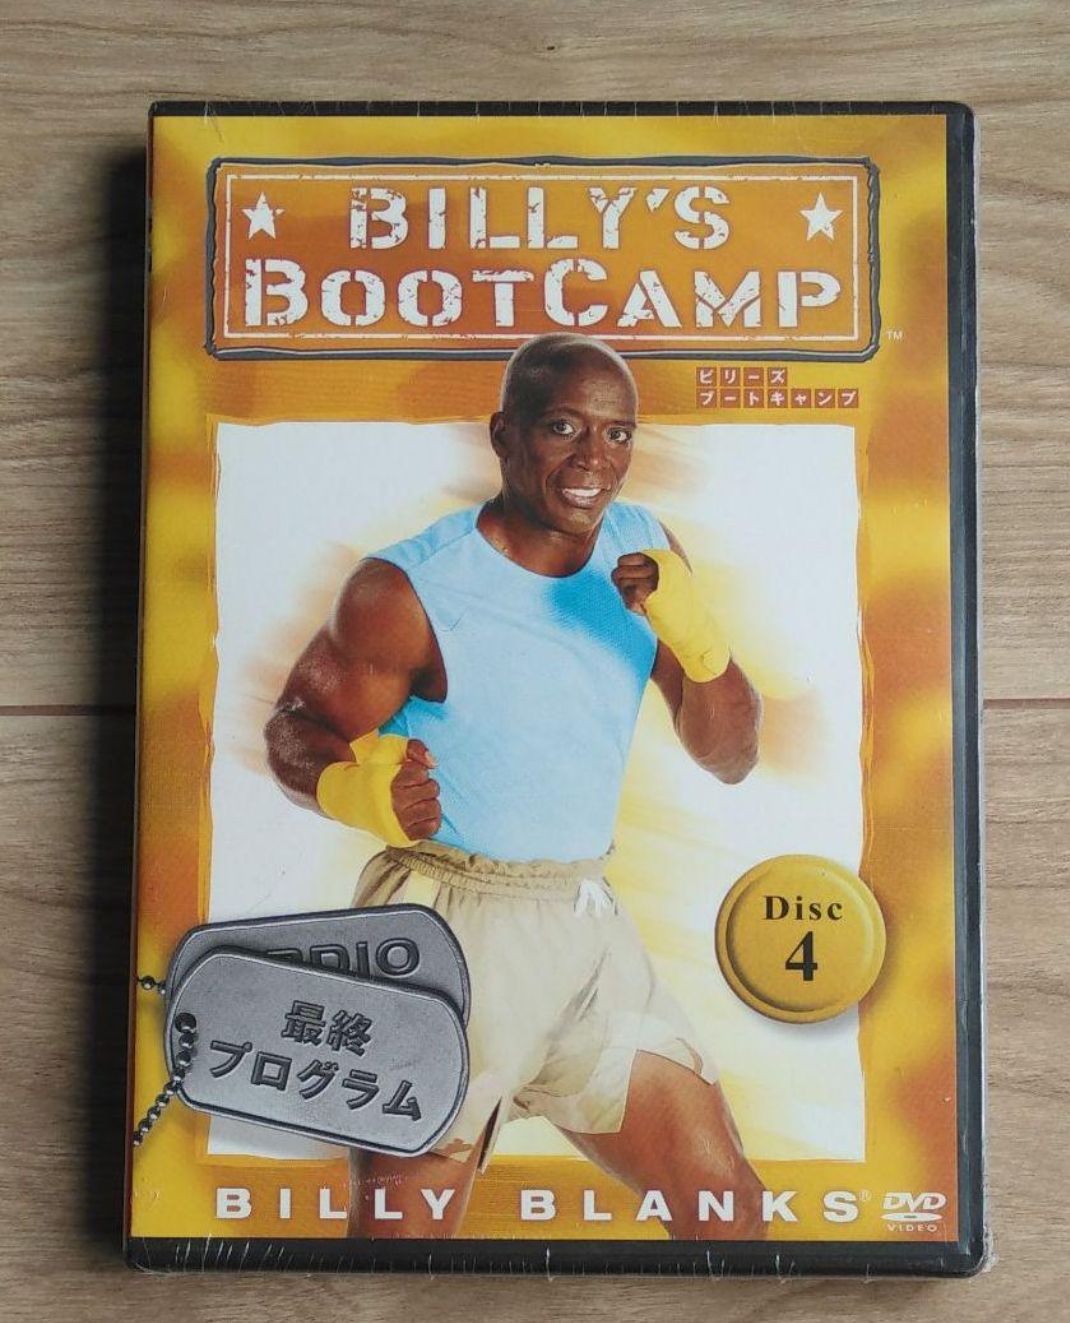 ビリーズブートキャンプ BILLY'S BOOTCAMP 全4巻セット日本語字幕